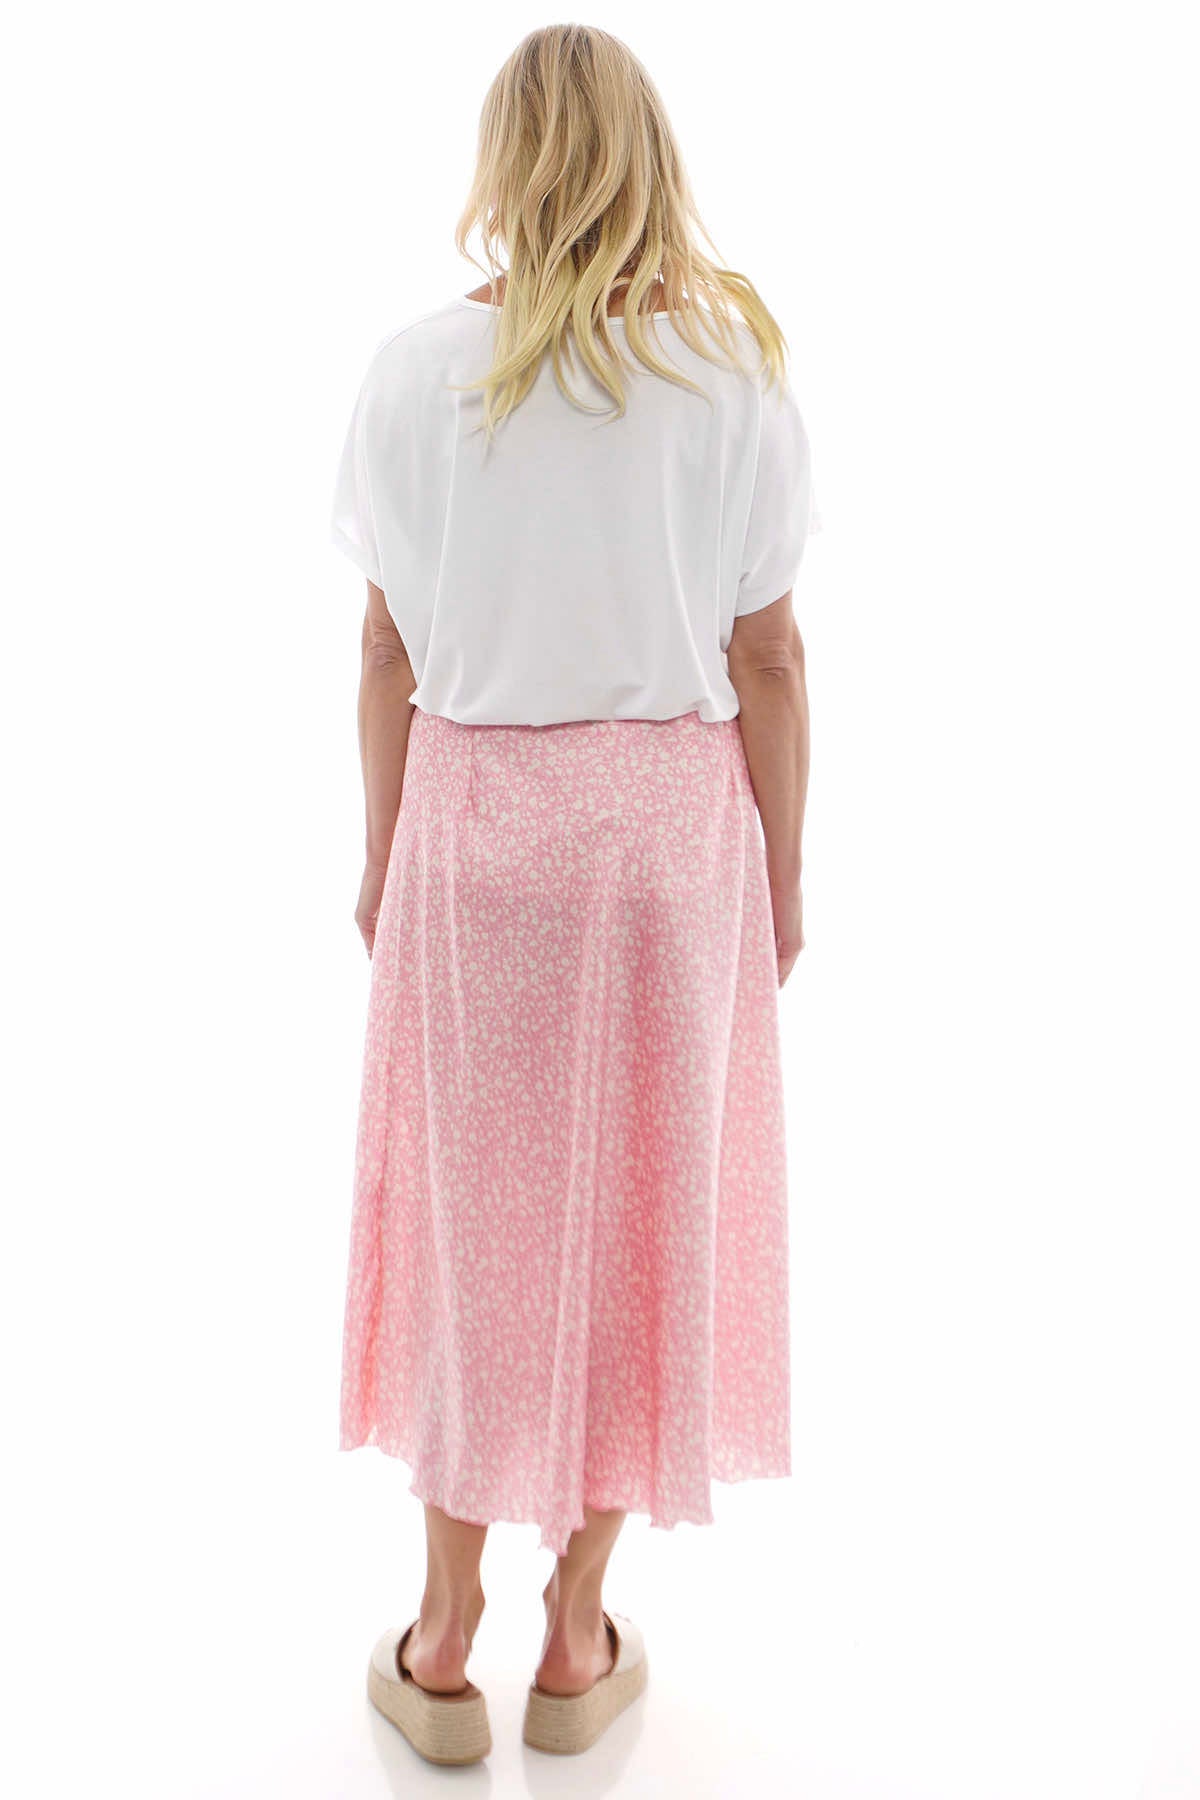 Ottilie Floral Print Skirt Pink